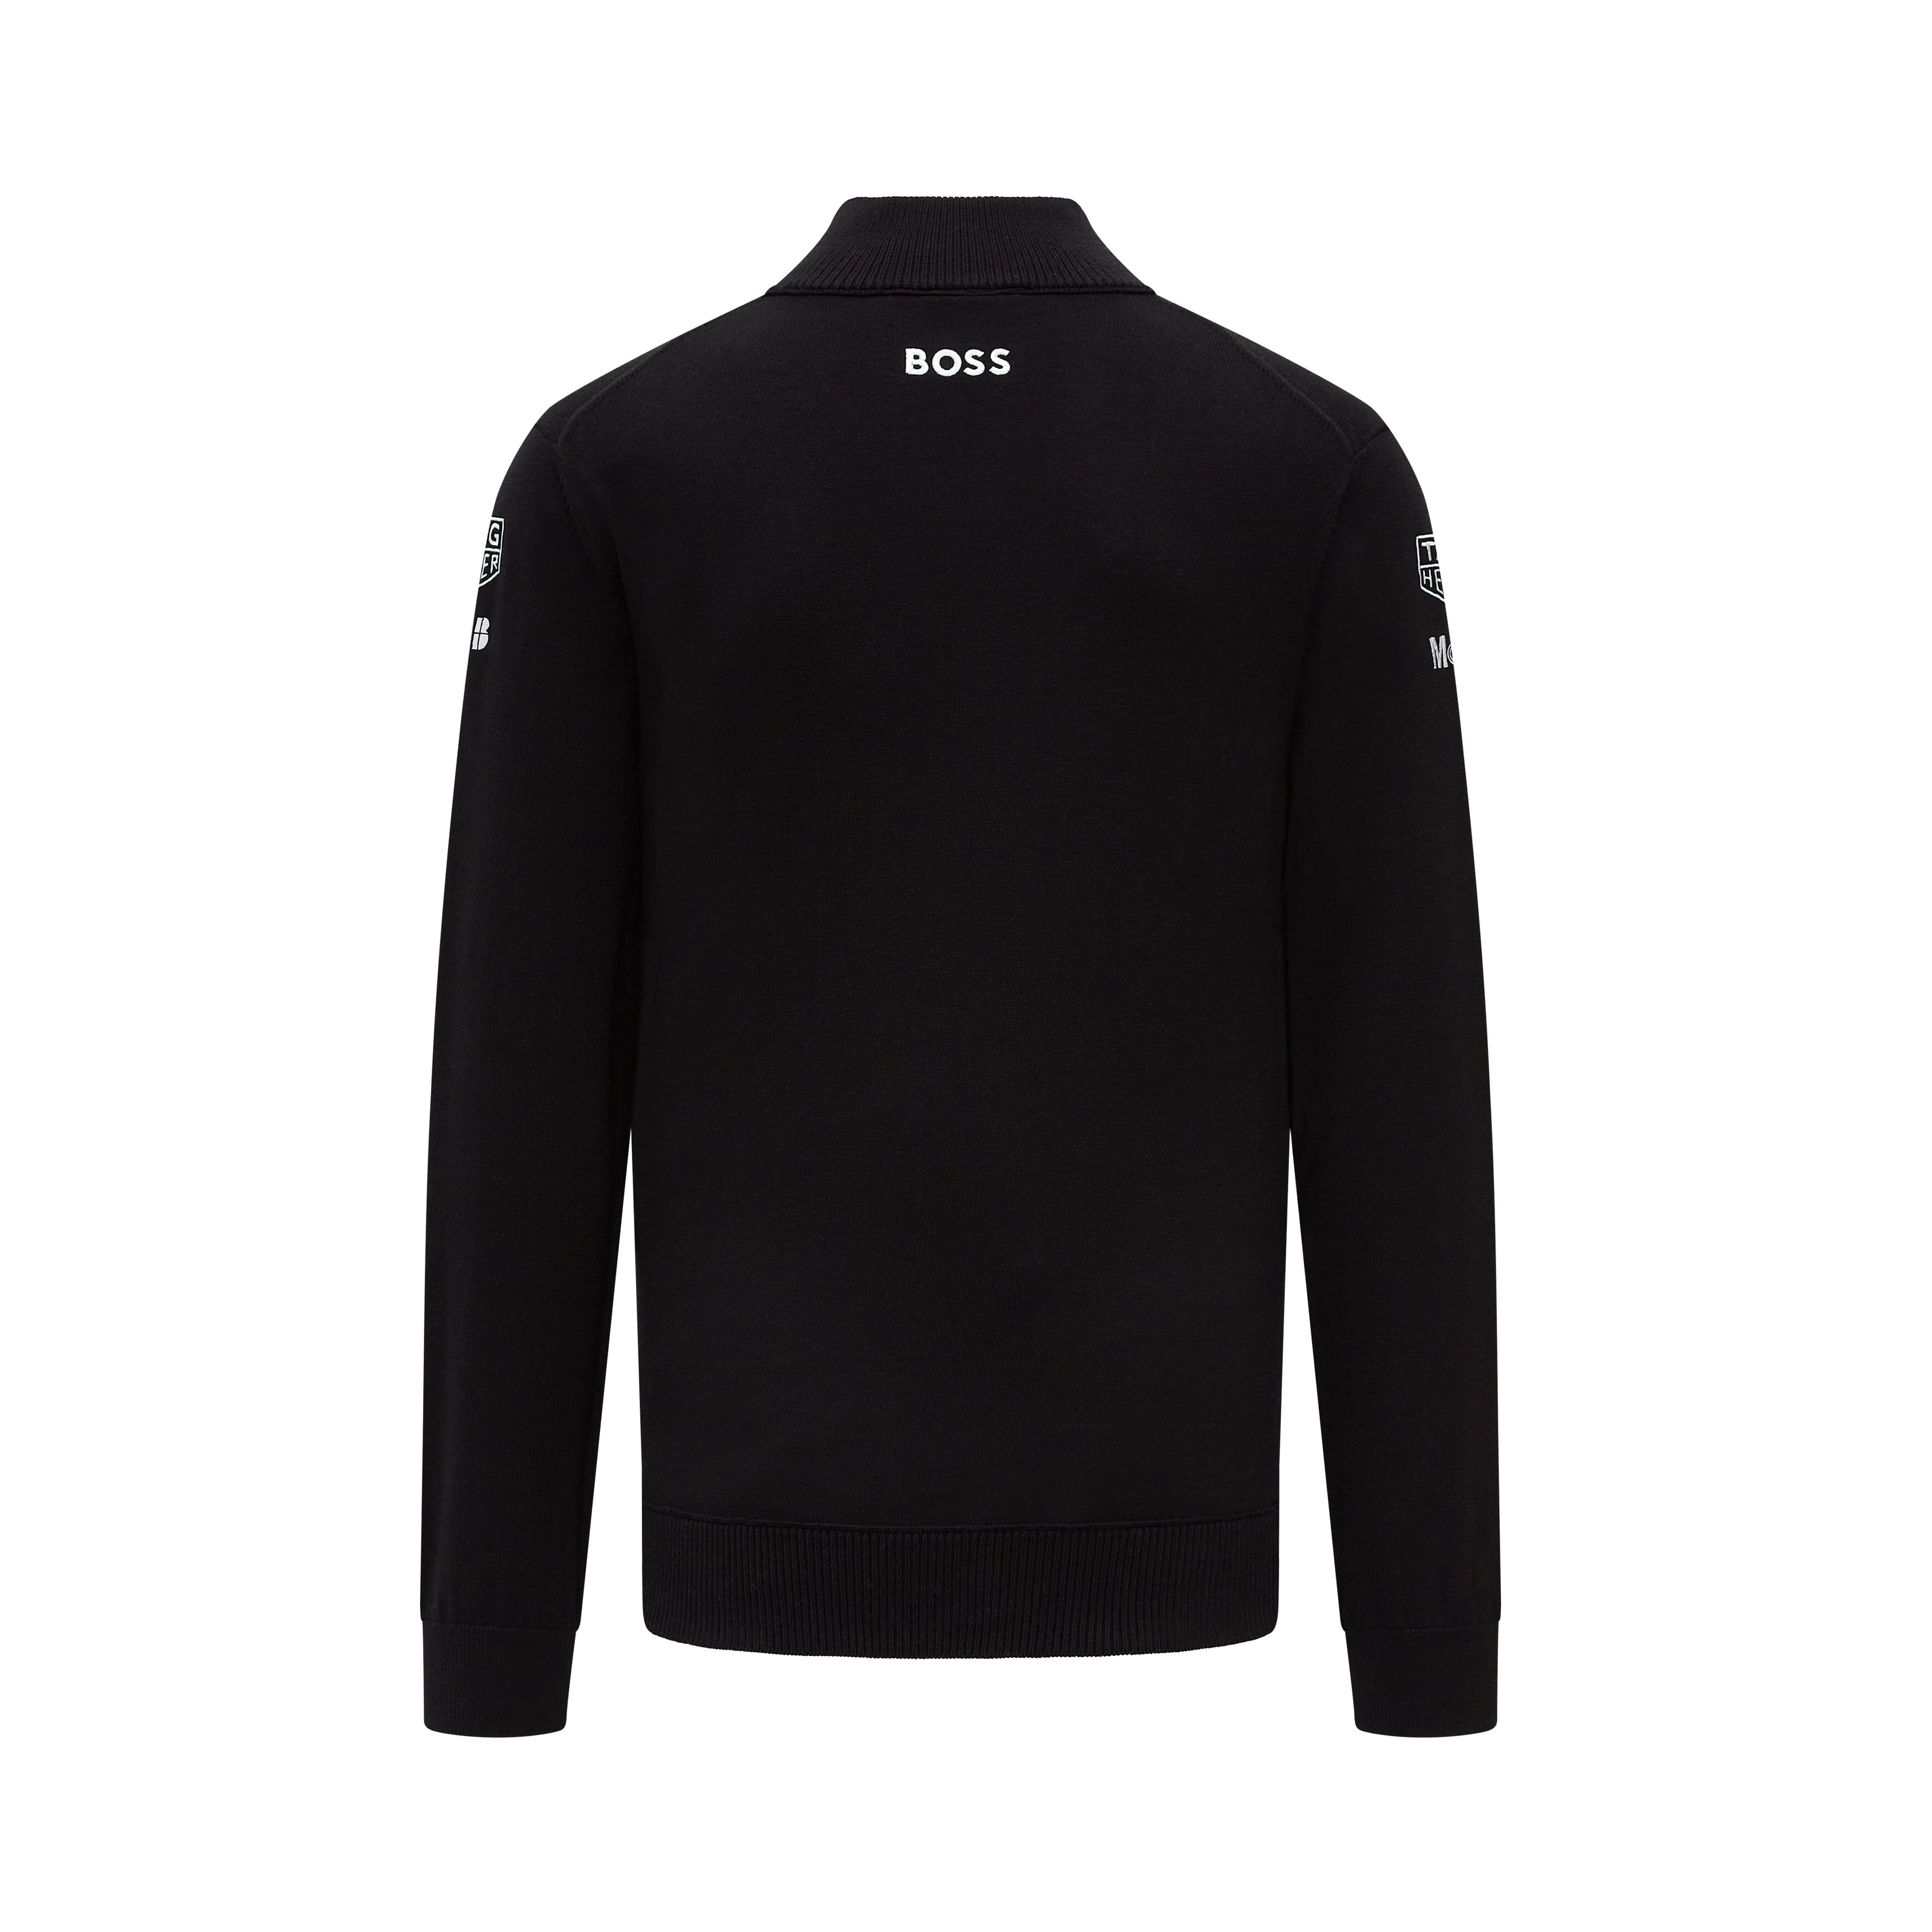 Porsche Formula E Team Knitted Sweater - Black